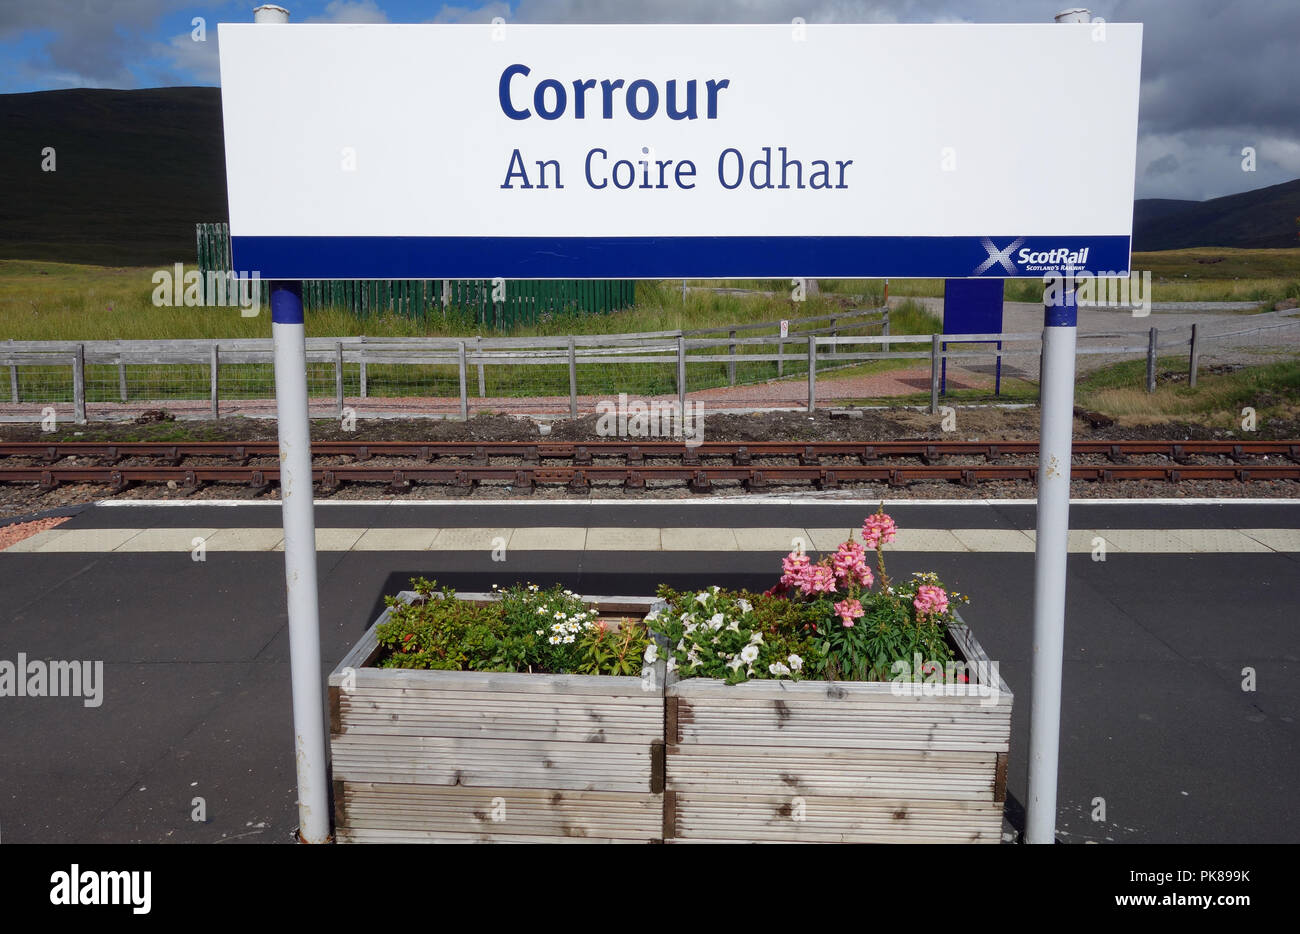 Corrour distant (Une Coire Odhar) Gare de Rannoch Moor dans les Highlands, Ecosse, Royaume-Uni. Banque D'Images